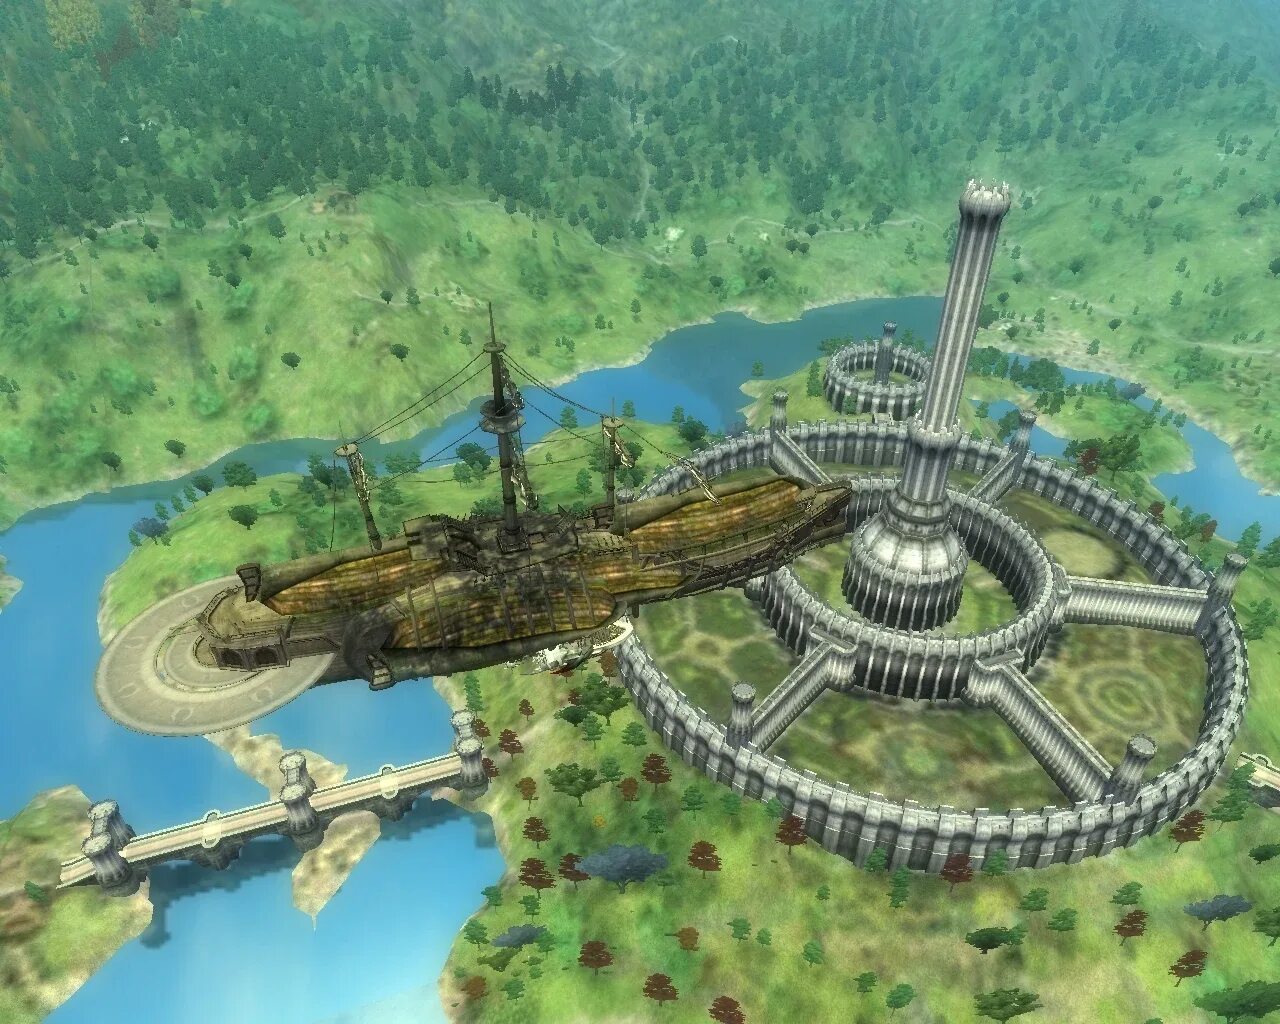 LUCKCATCHERS 2. Oblivion корабль. Имперский город в стиле будущего обливион. Oblivion аттракцион Америка.